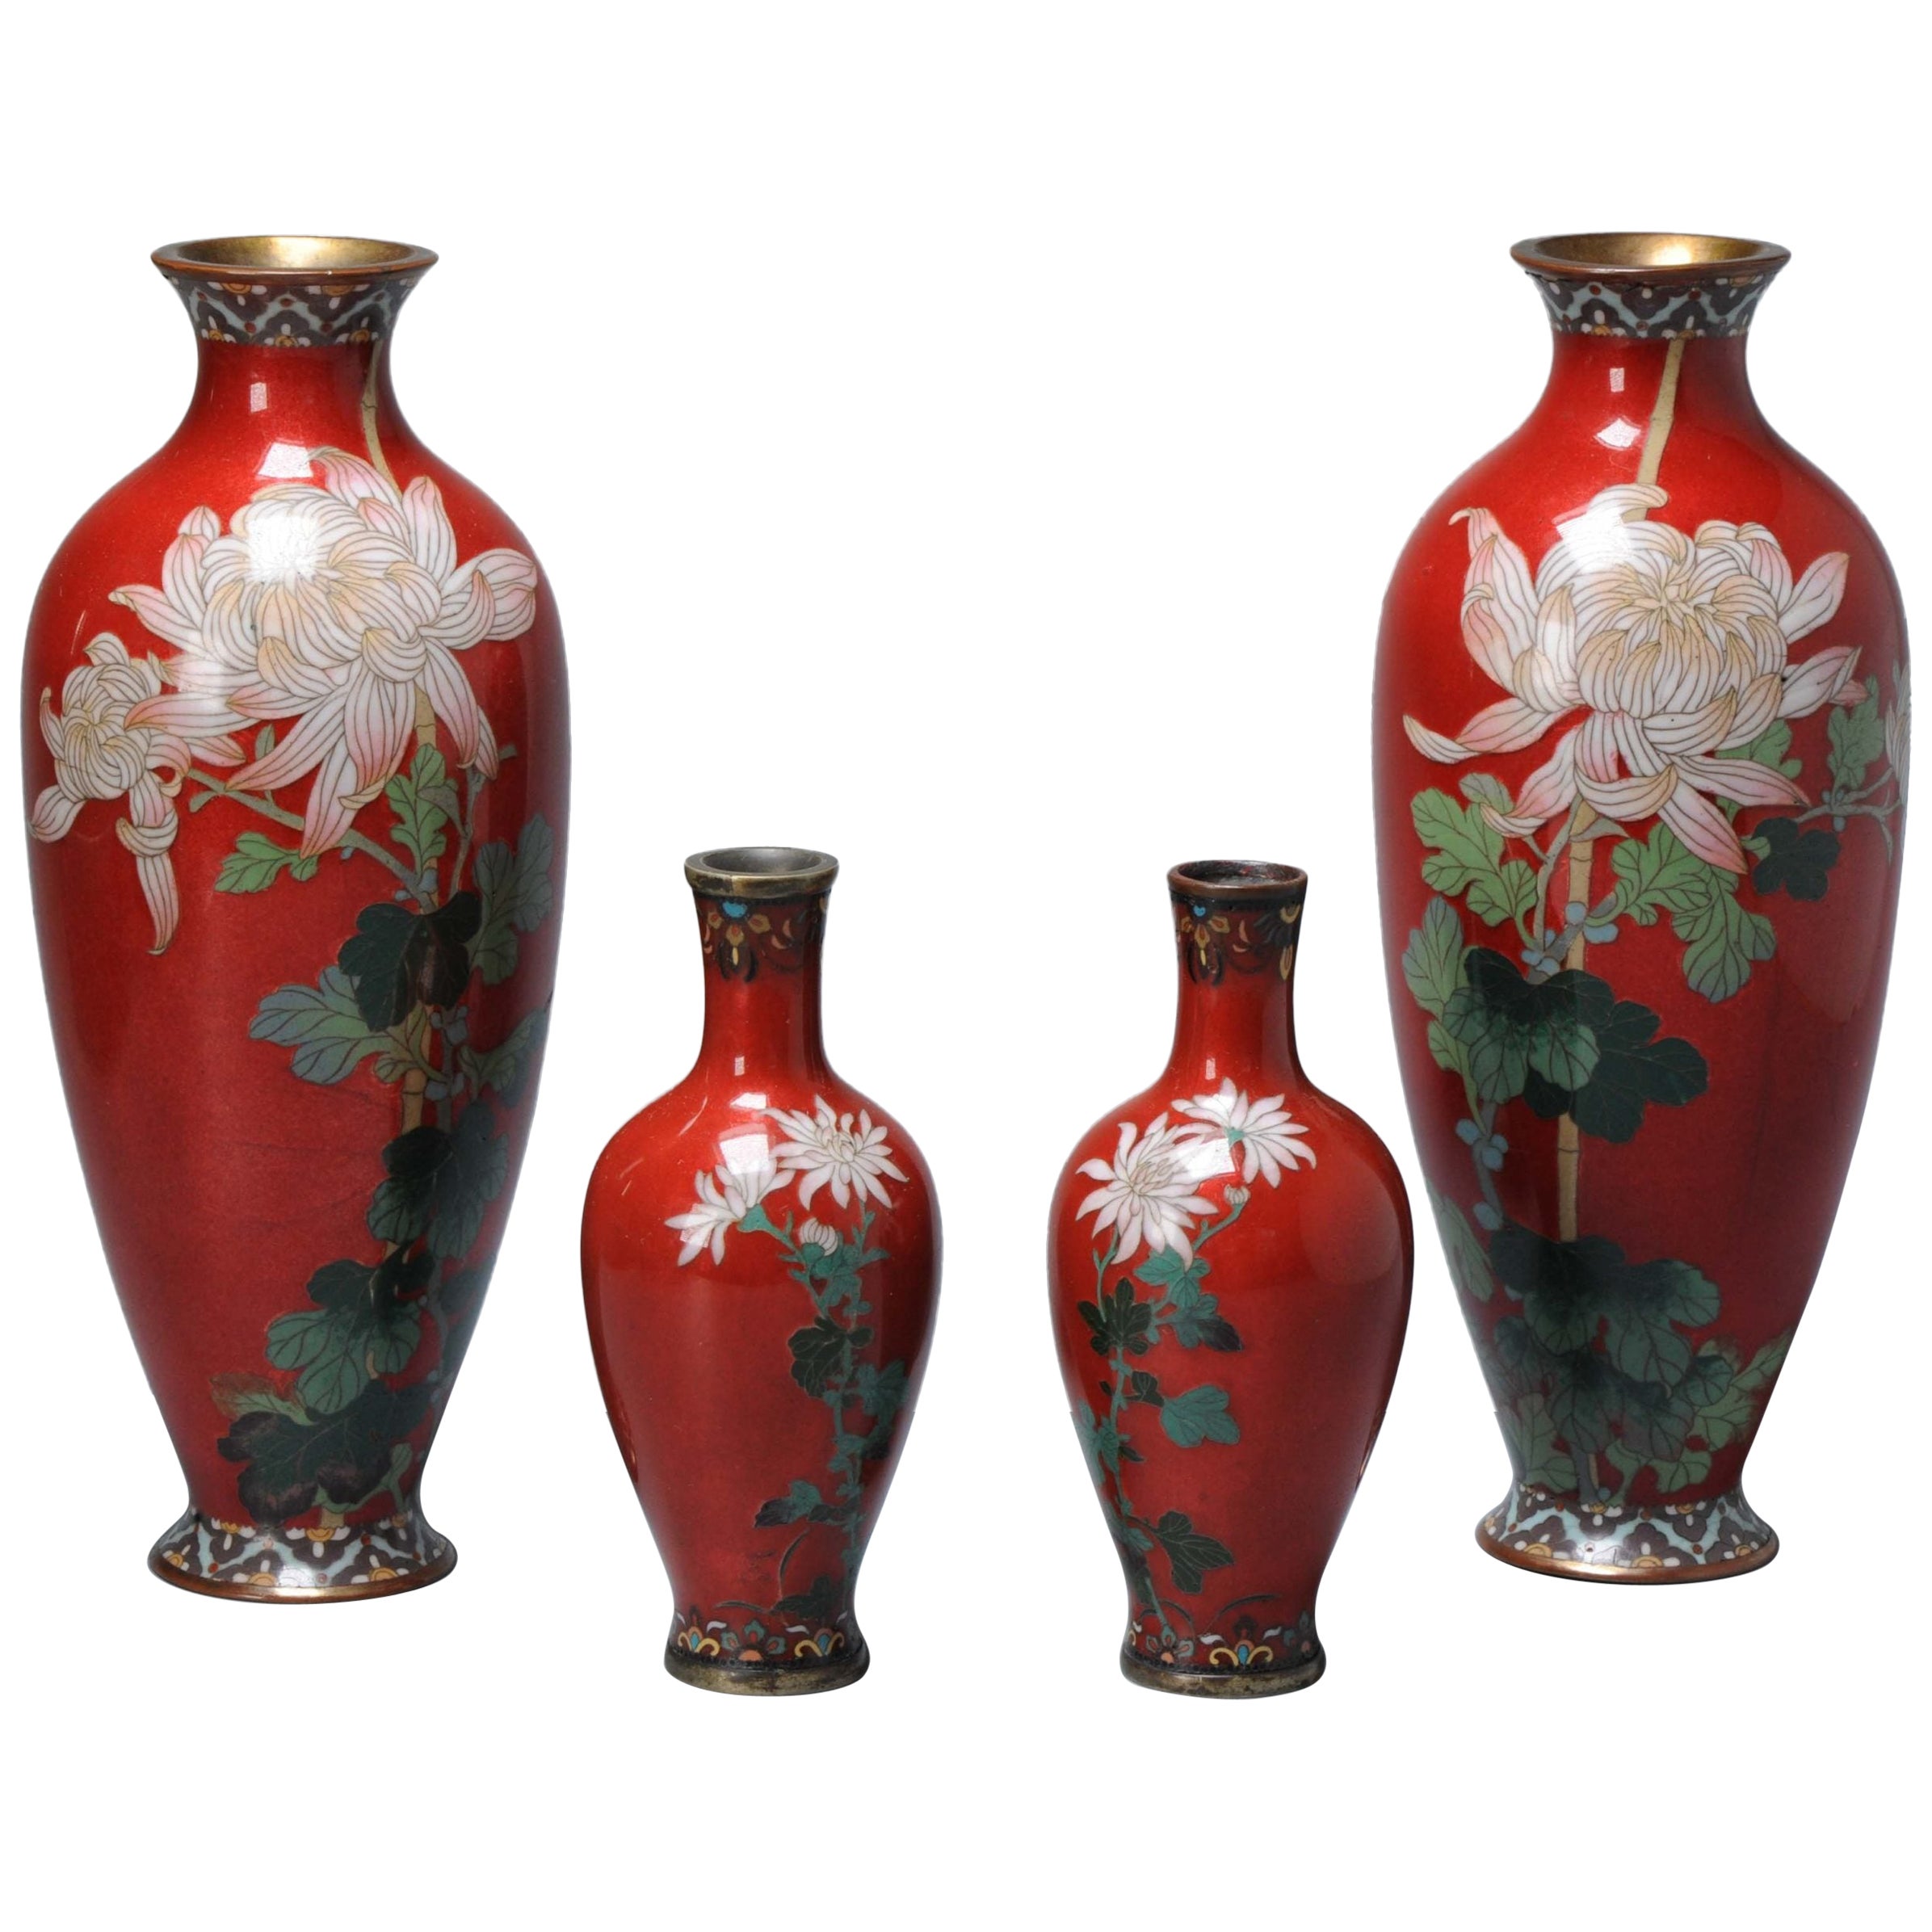 Set of 4 Lovely Red Cloisonne Enamel Flower Vases Meiji Era, 1868-1912